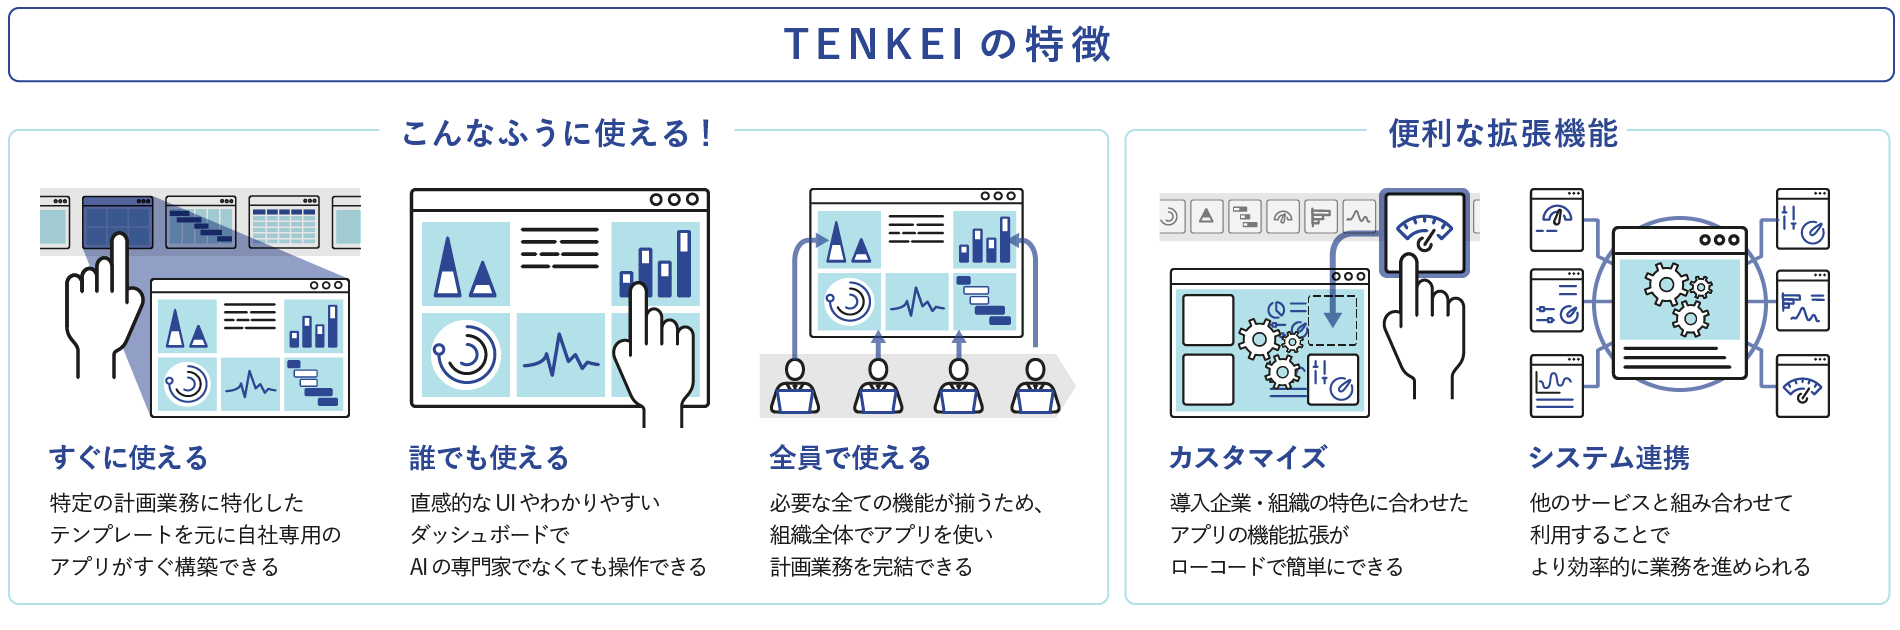 バーチャレクス、計画業務の最適化AIプラットフォーム「TENKEI